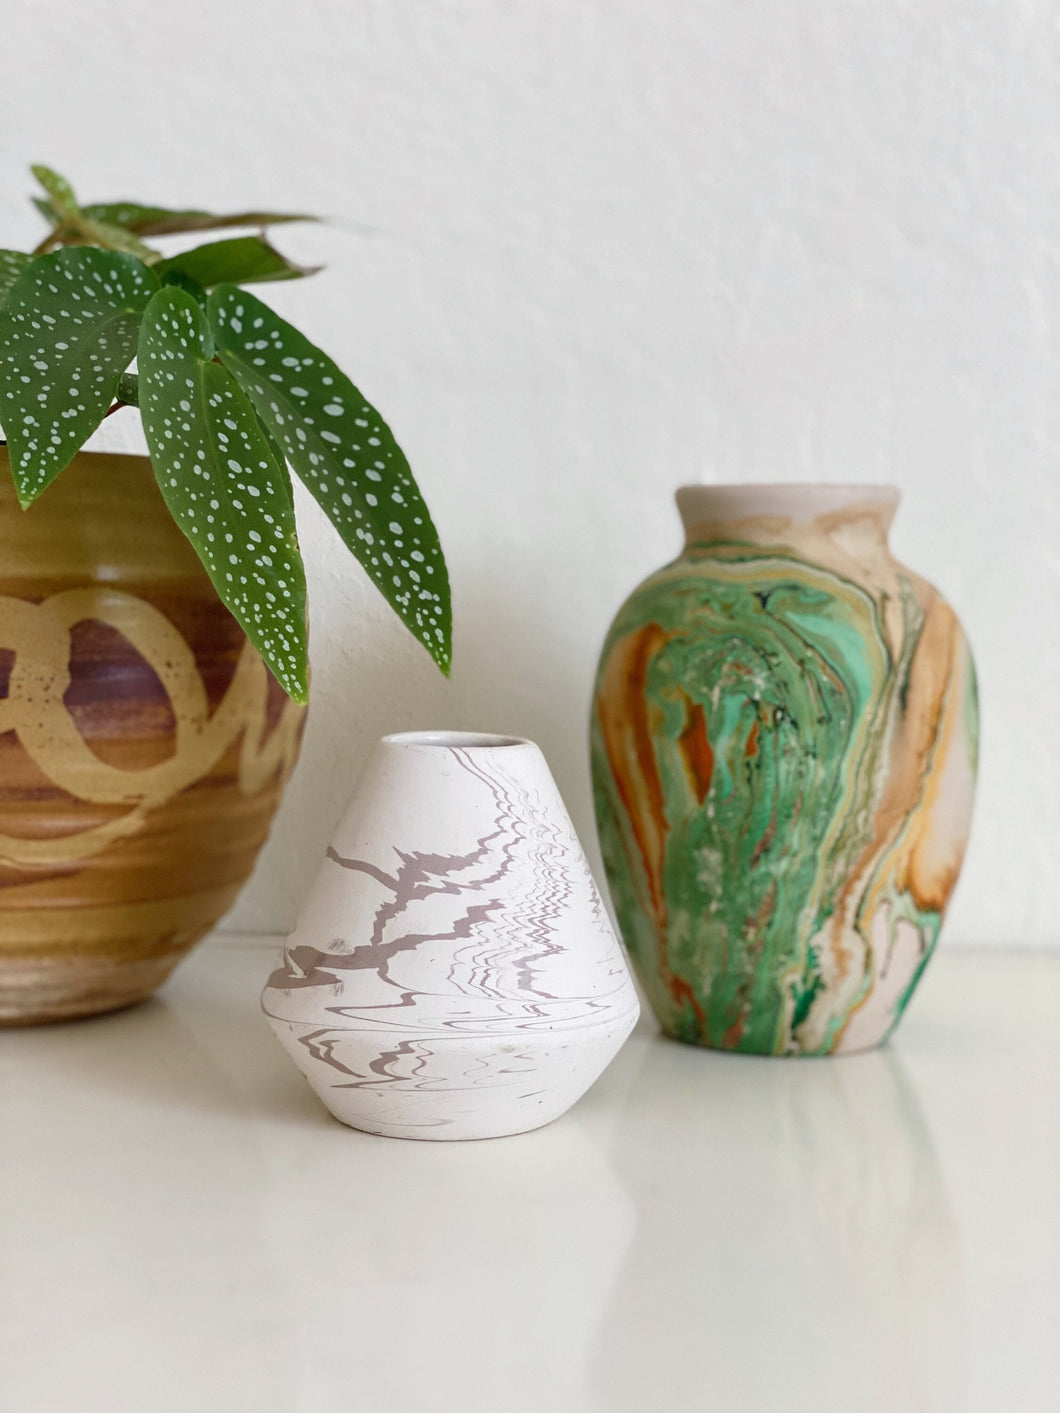 Small White Swirled Nemadji Pottery-inspired Vase